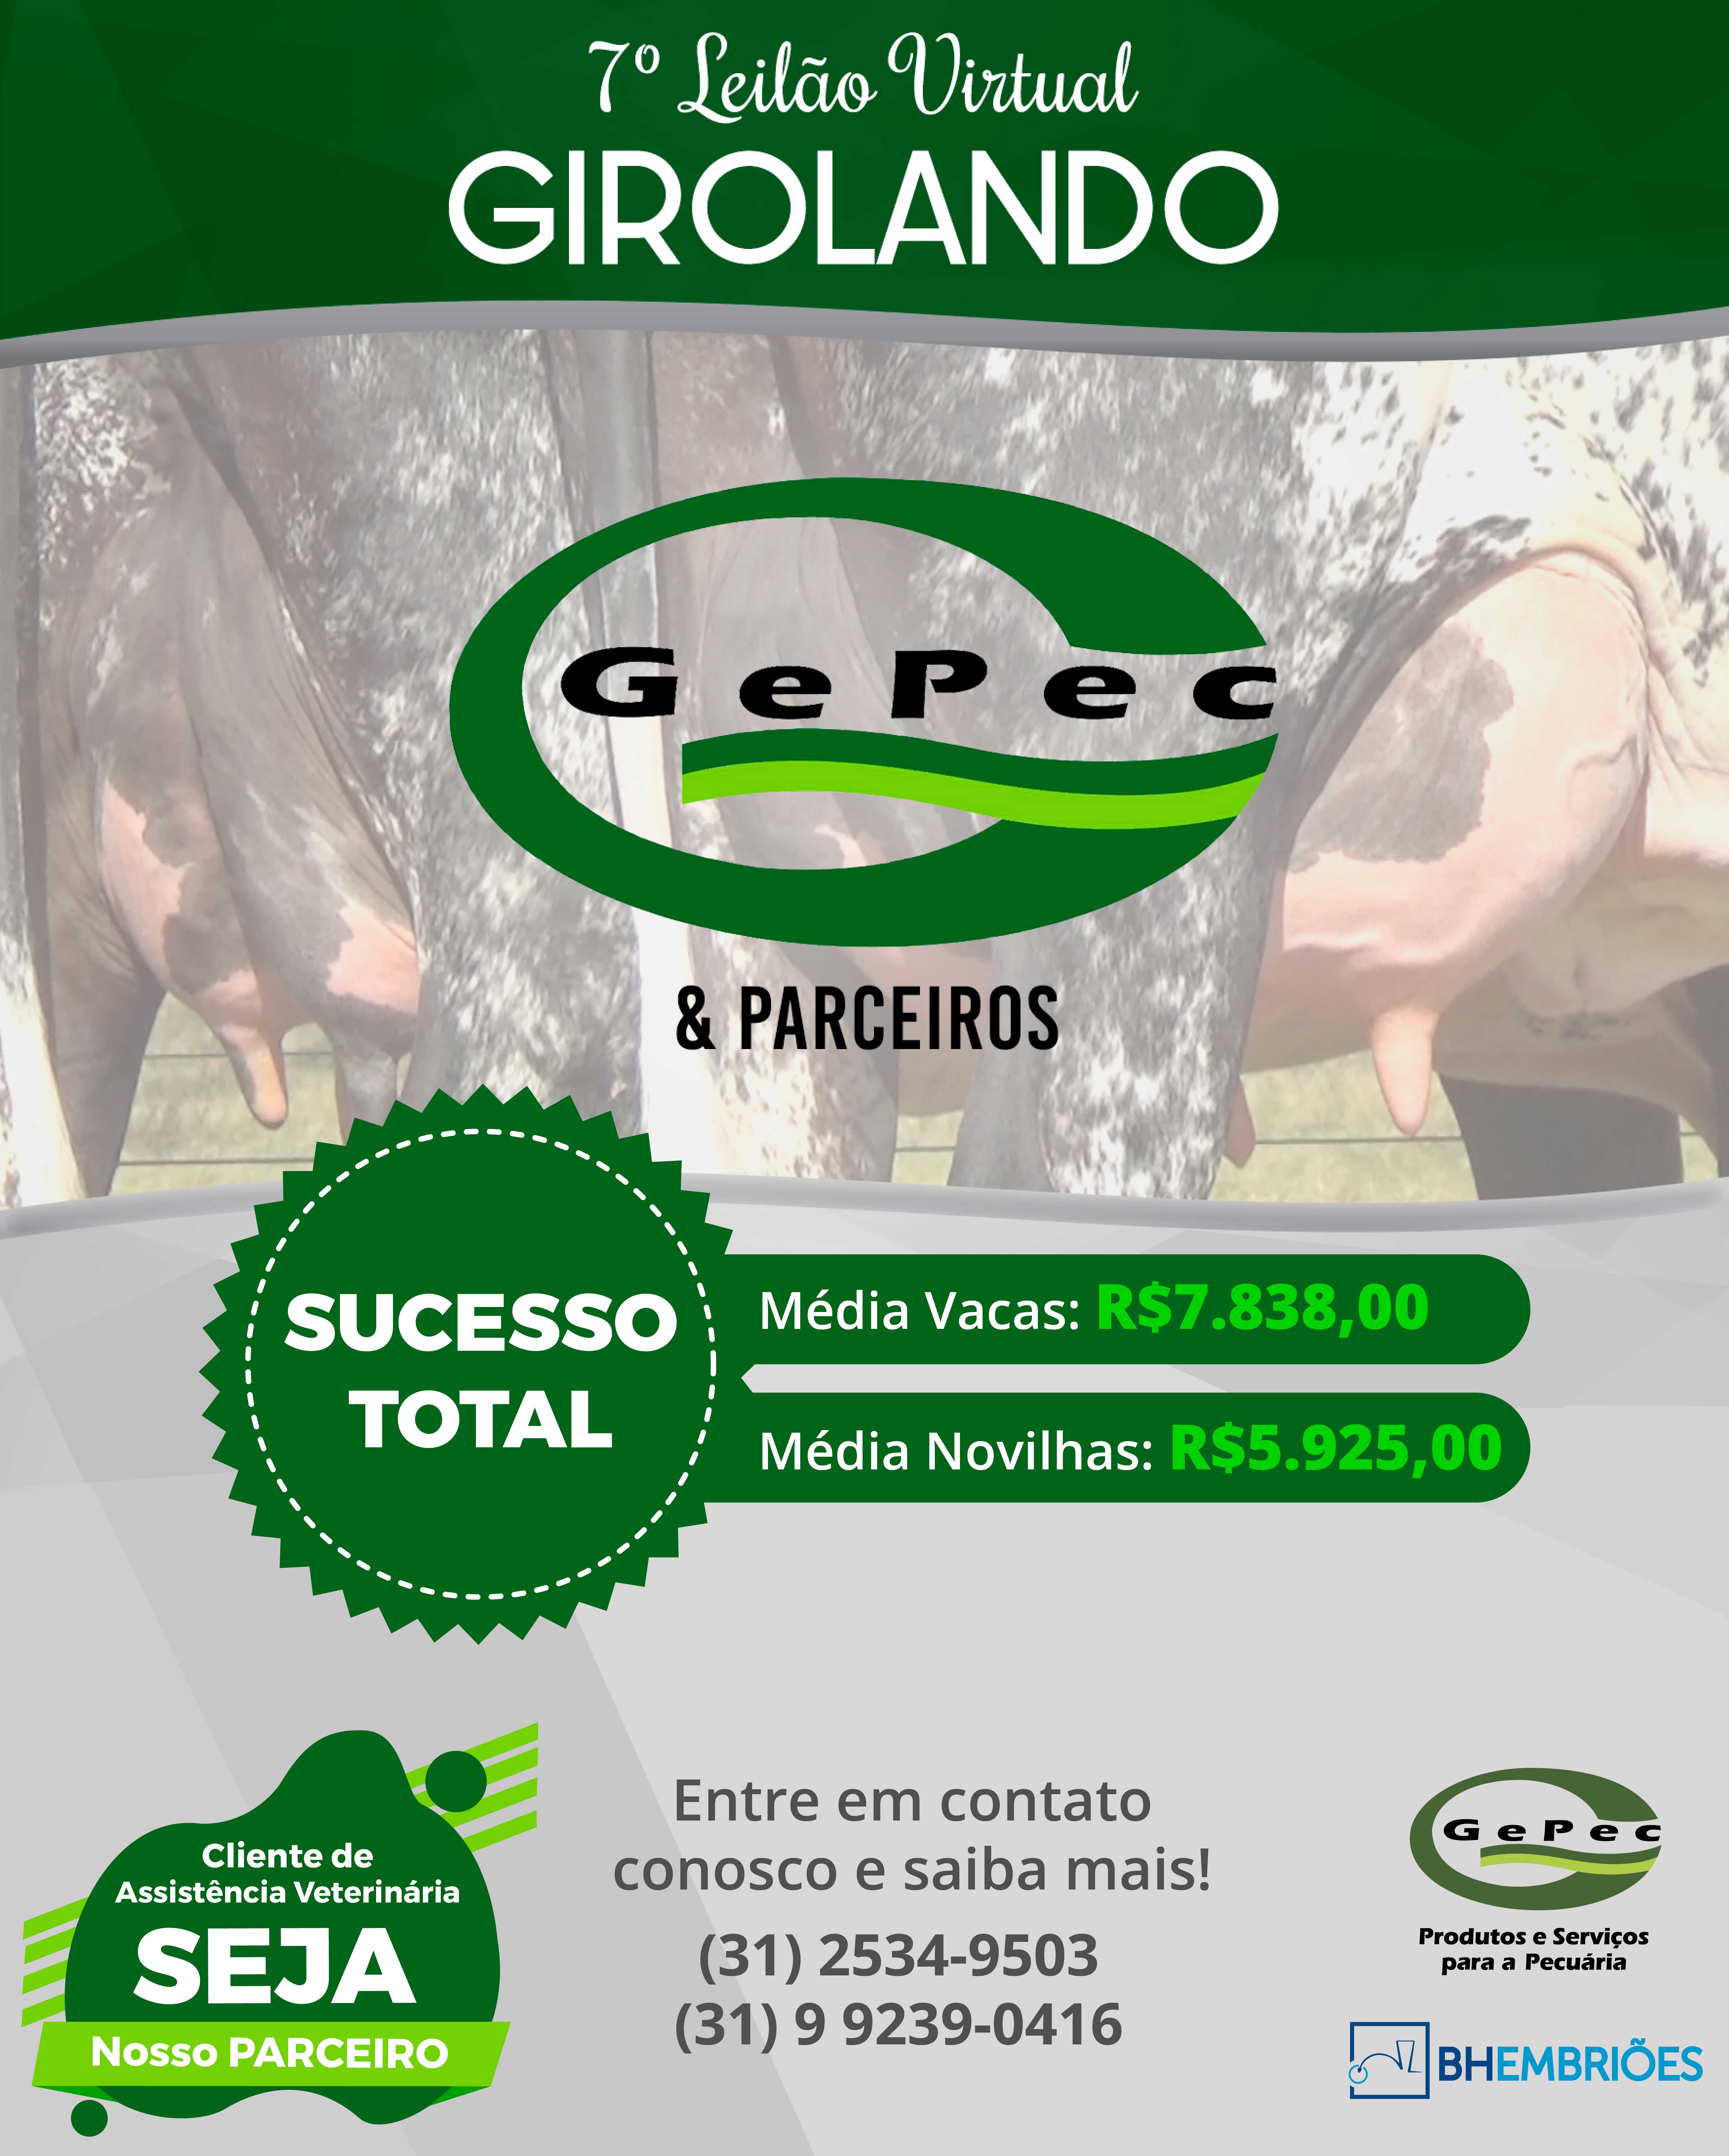 Leilão Gepec 2020! Participe!